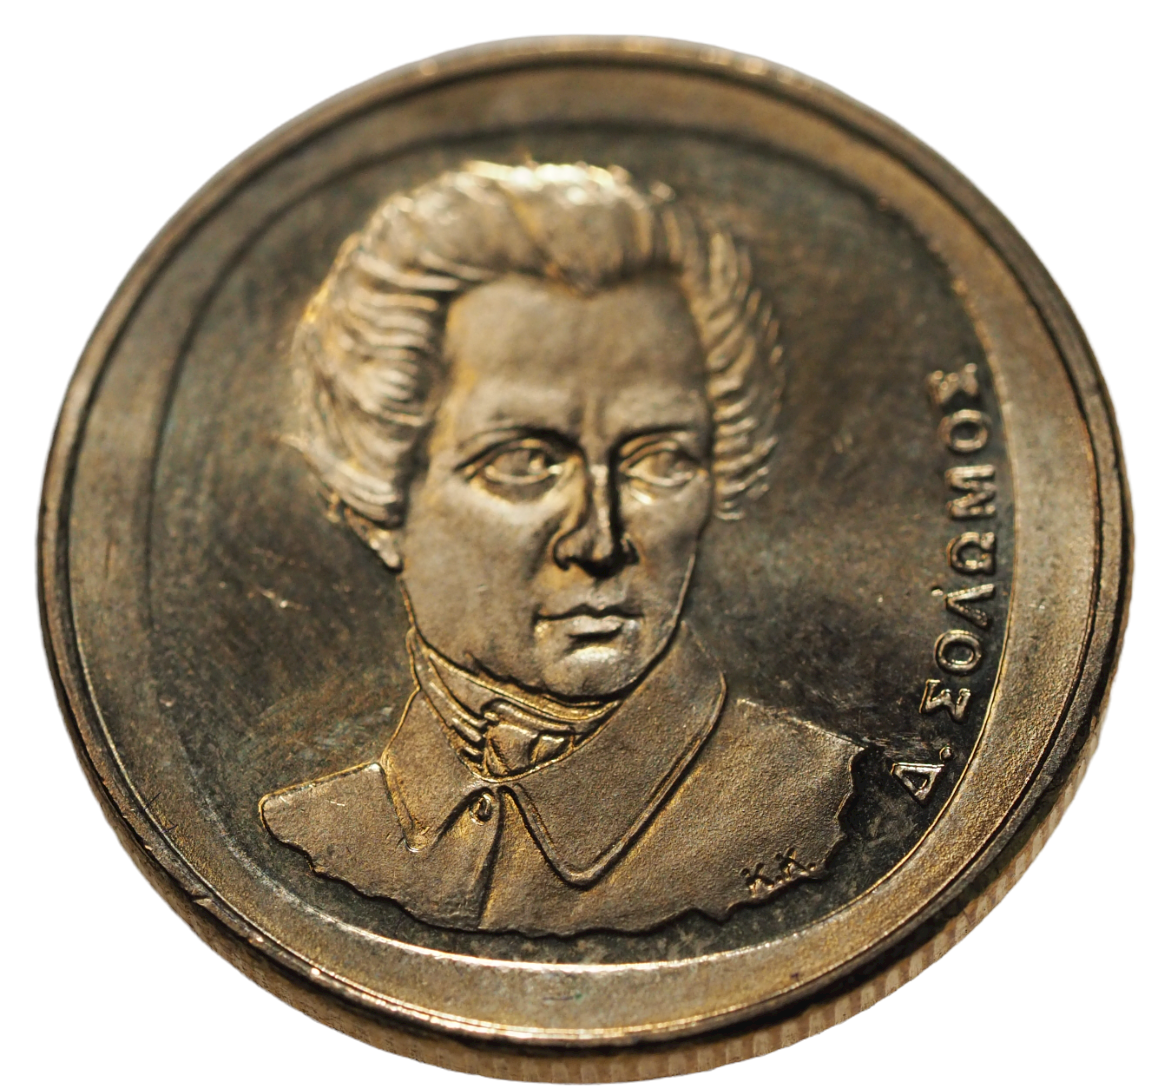 Greece 20 Drachmes  2000 UNC Coin